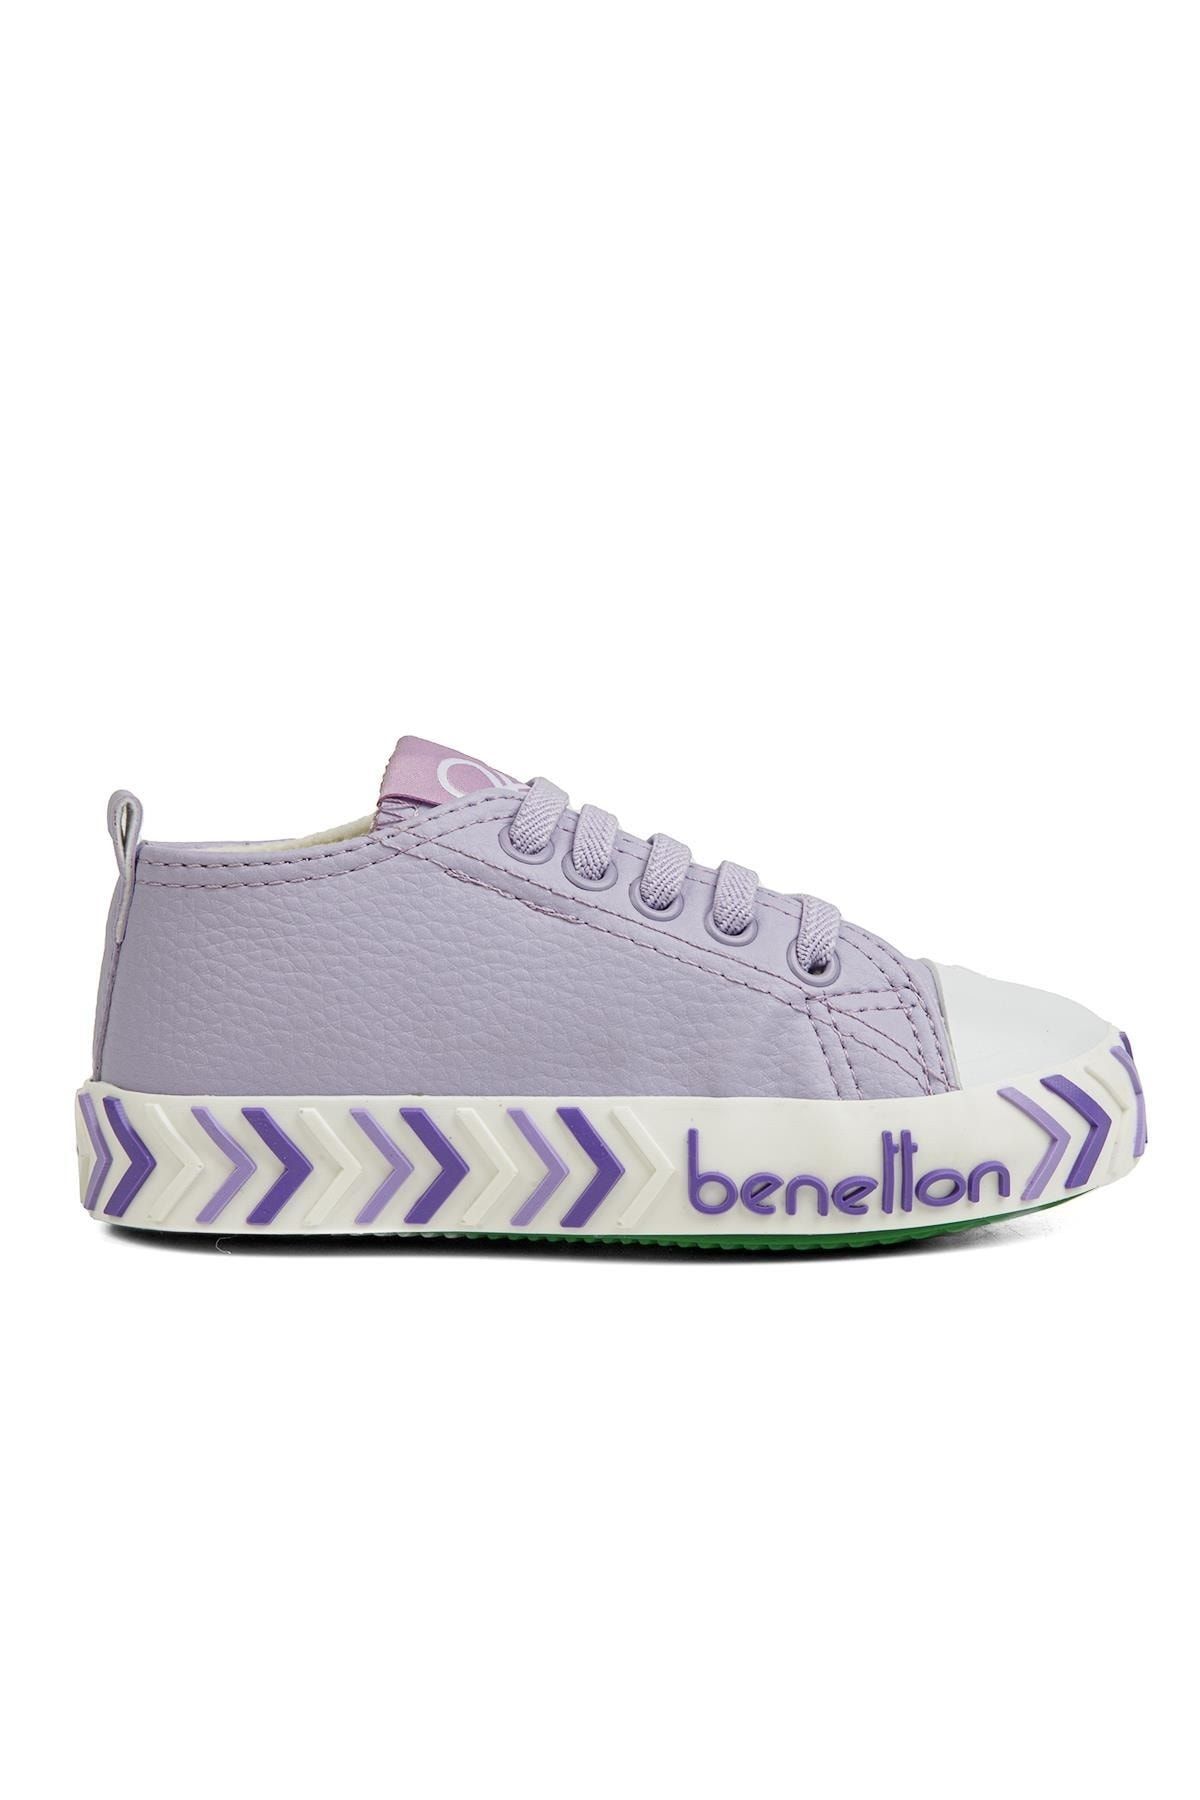 Benetton ® | Bn-30784 - 3394 Lila - Çocuk Spor Ayakkabı